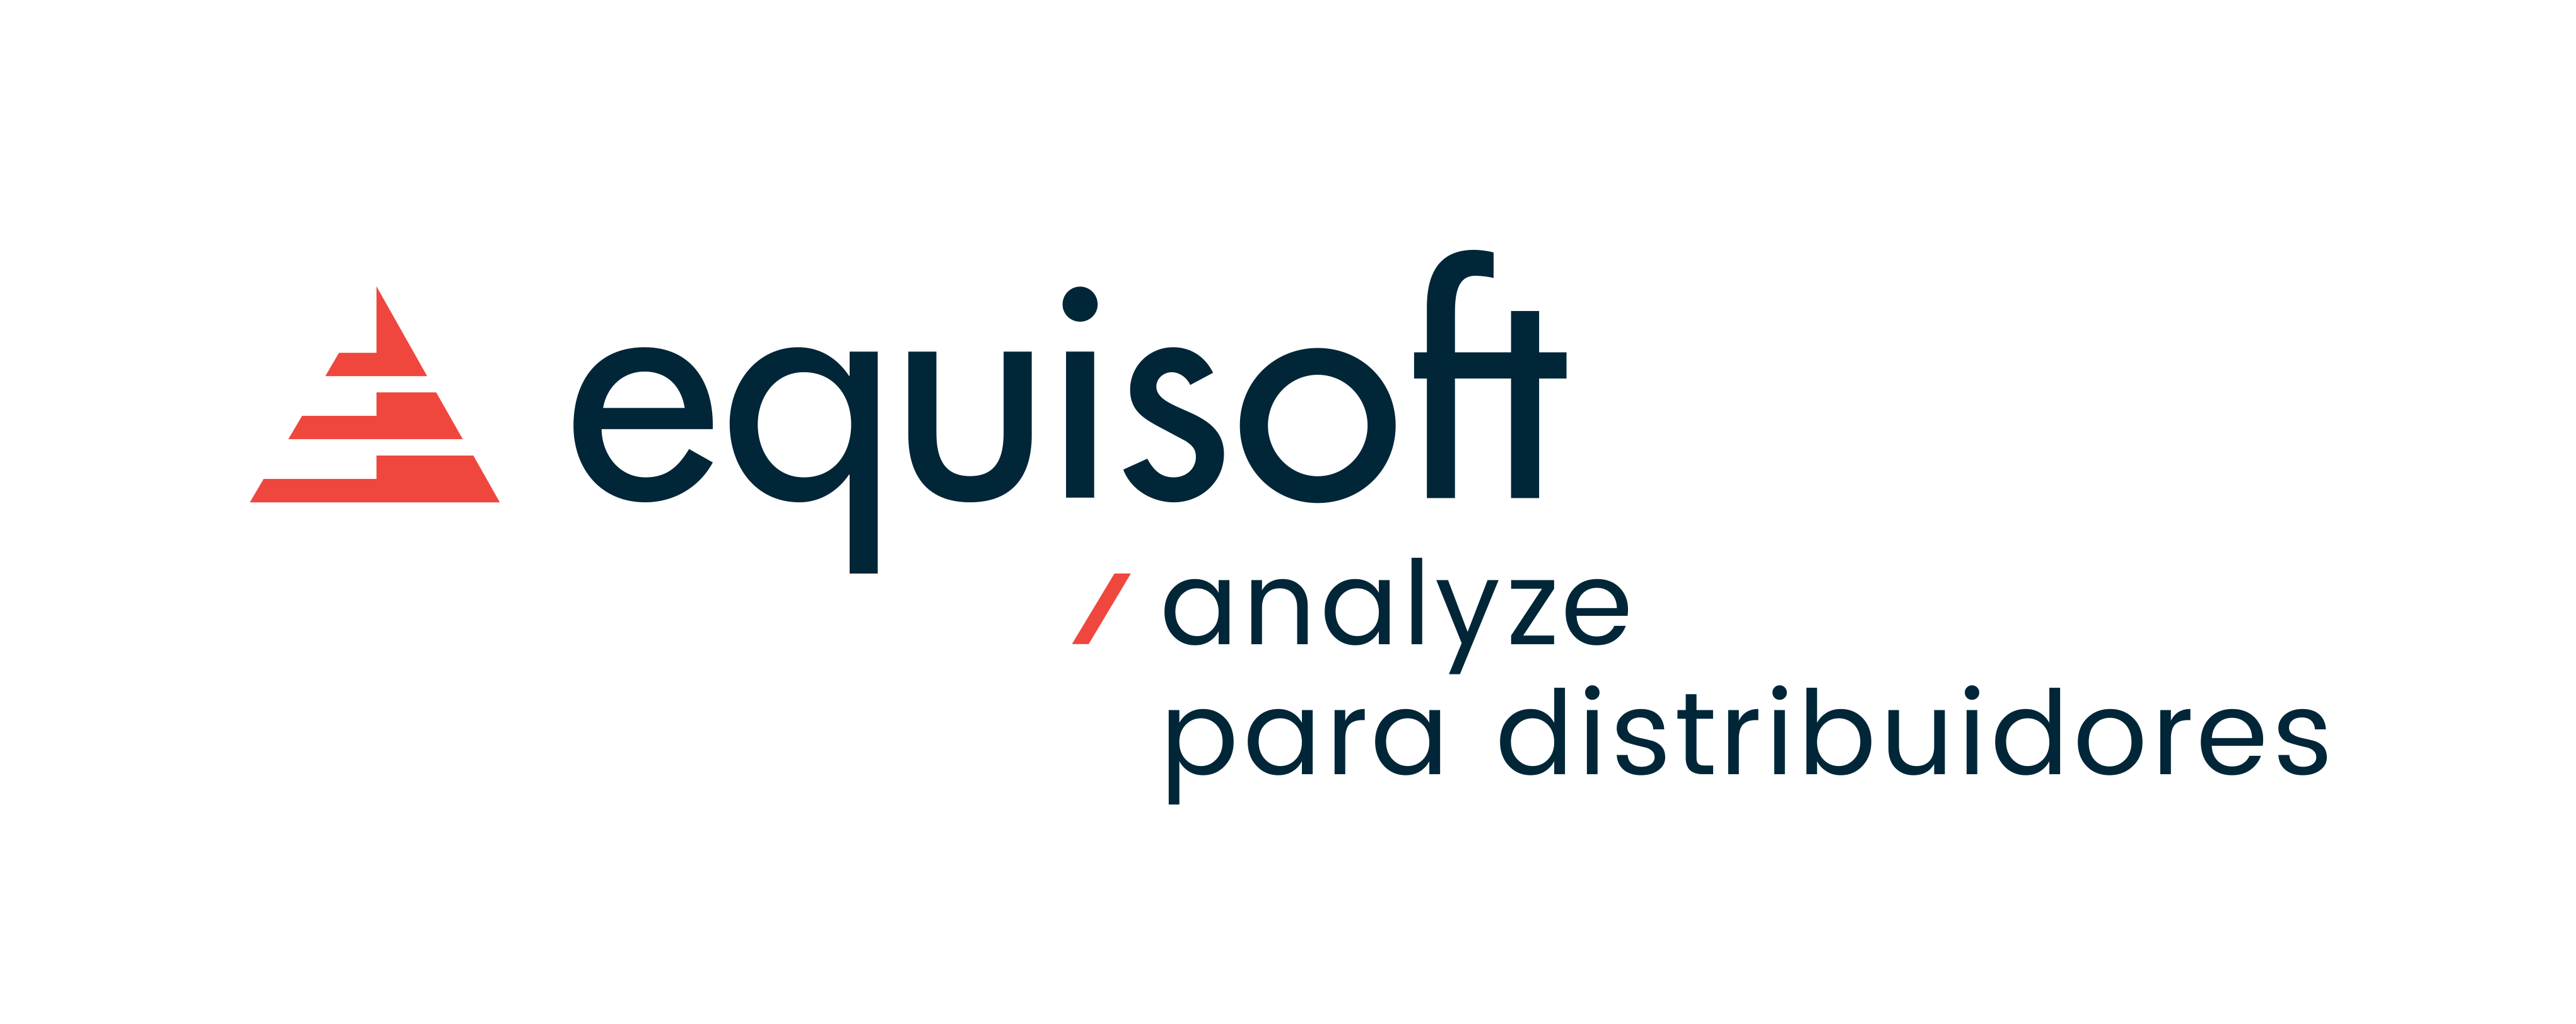 Equisoft/analyze para distribuidores